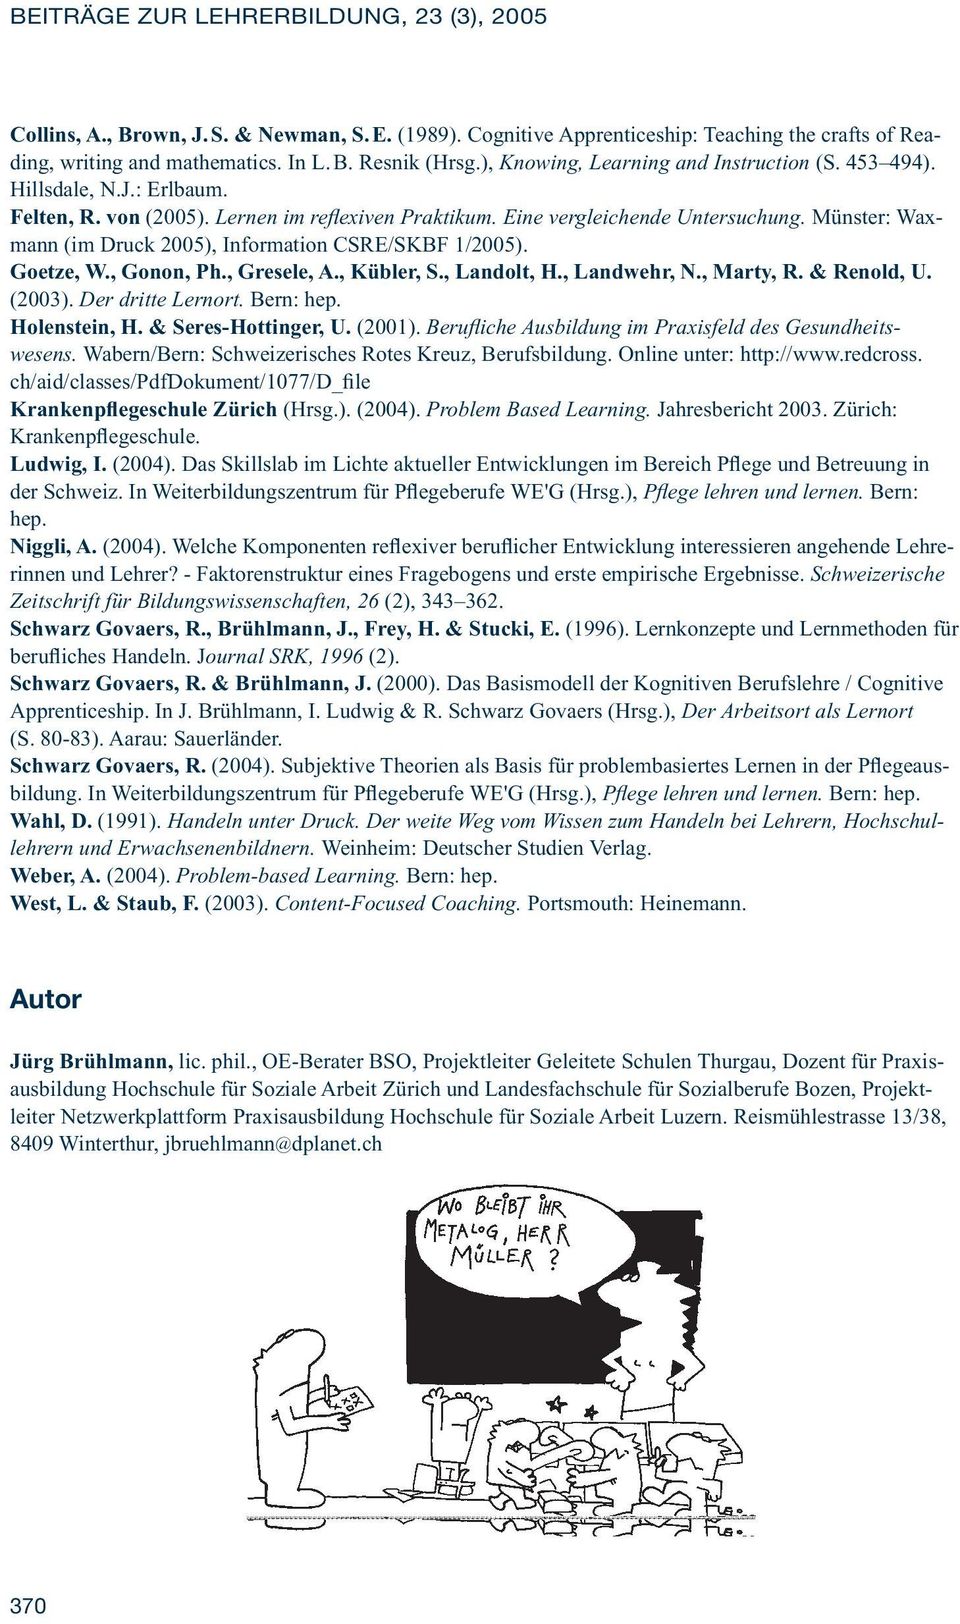 Münster: Waxmann (im Druck 2005), Information CSRE/SKBF 1/2005). Goetze, W., Gonon, Ph., Gresele, A., Kübler, S., Landolt, H., Landwehr, N., Marty, R. & Renold, U. (2003). Der dritte Lernort.